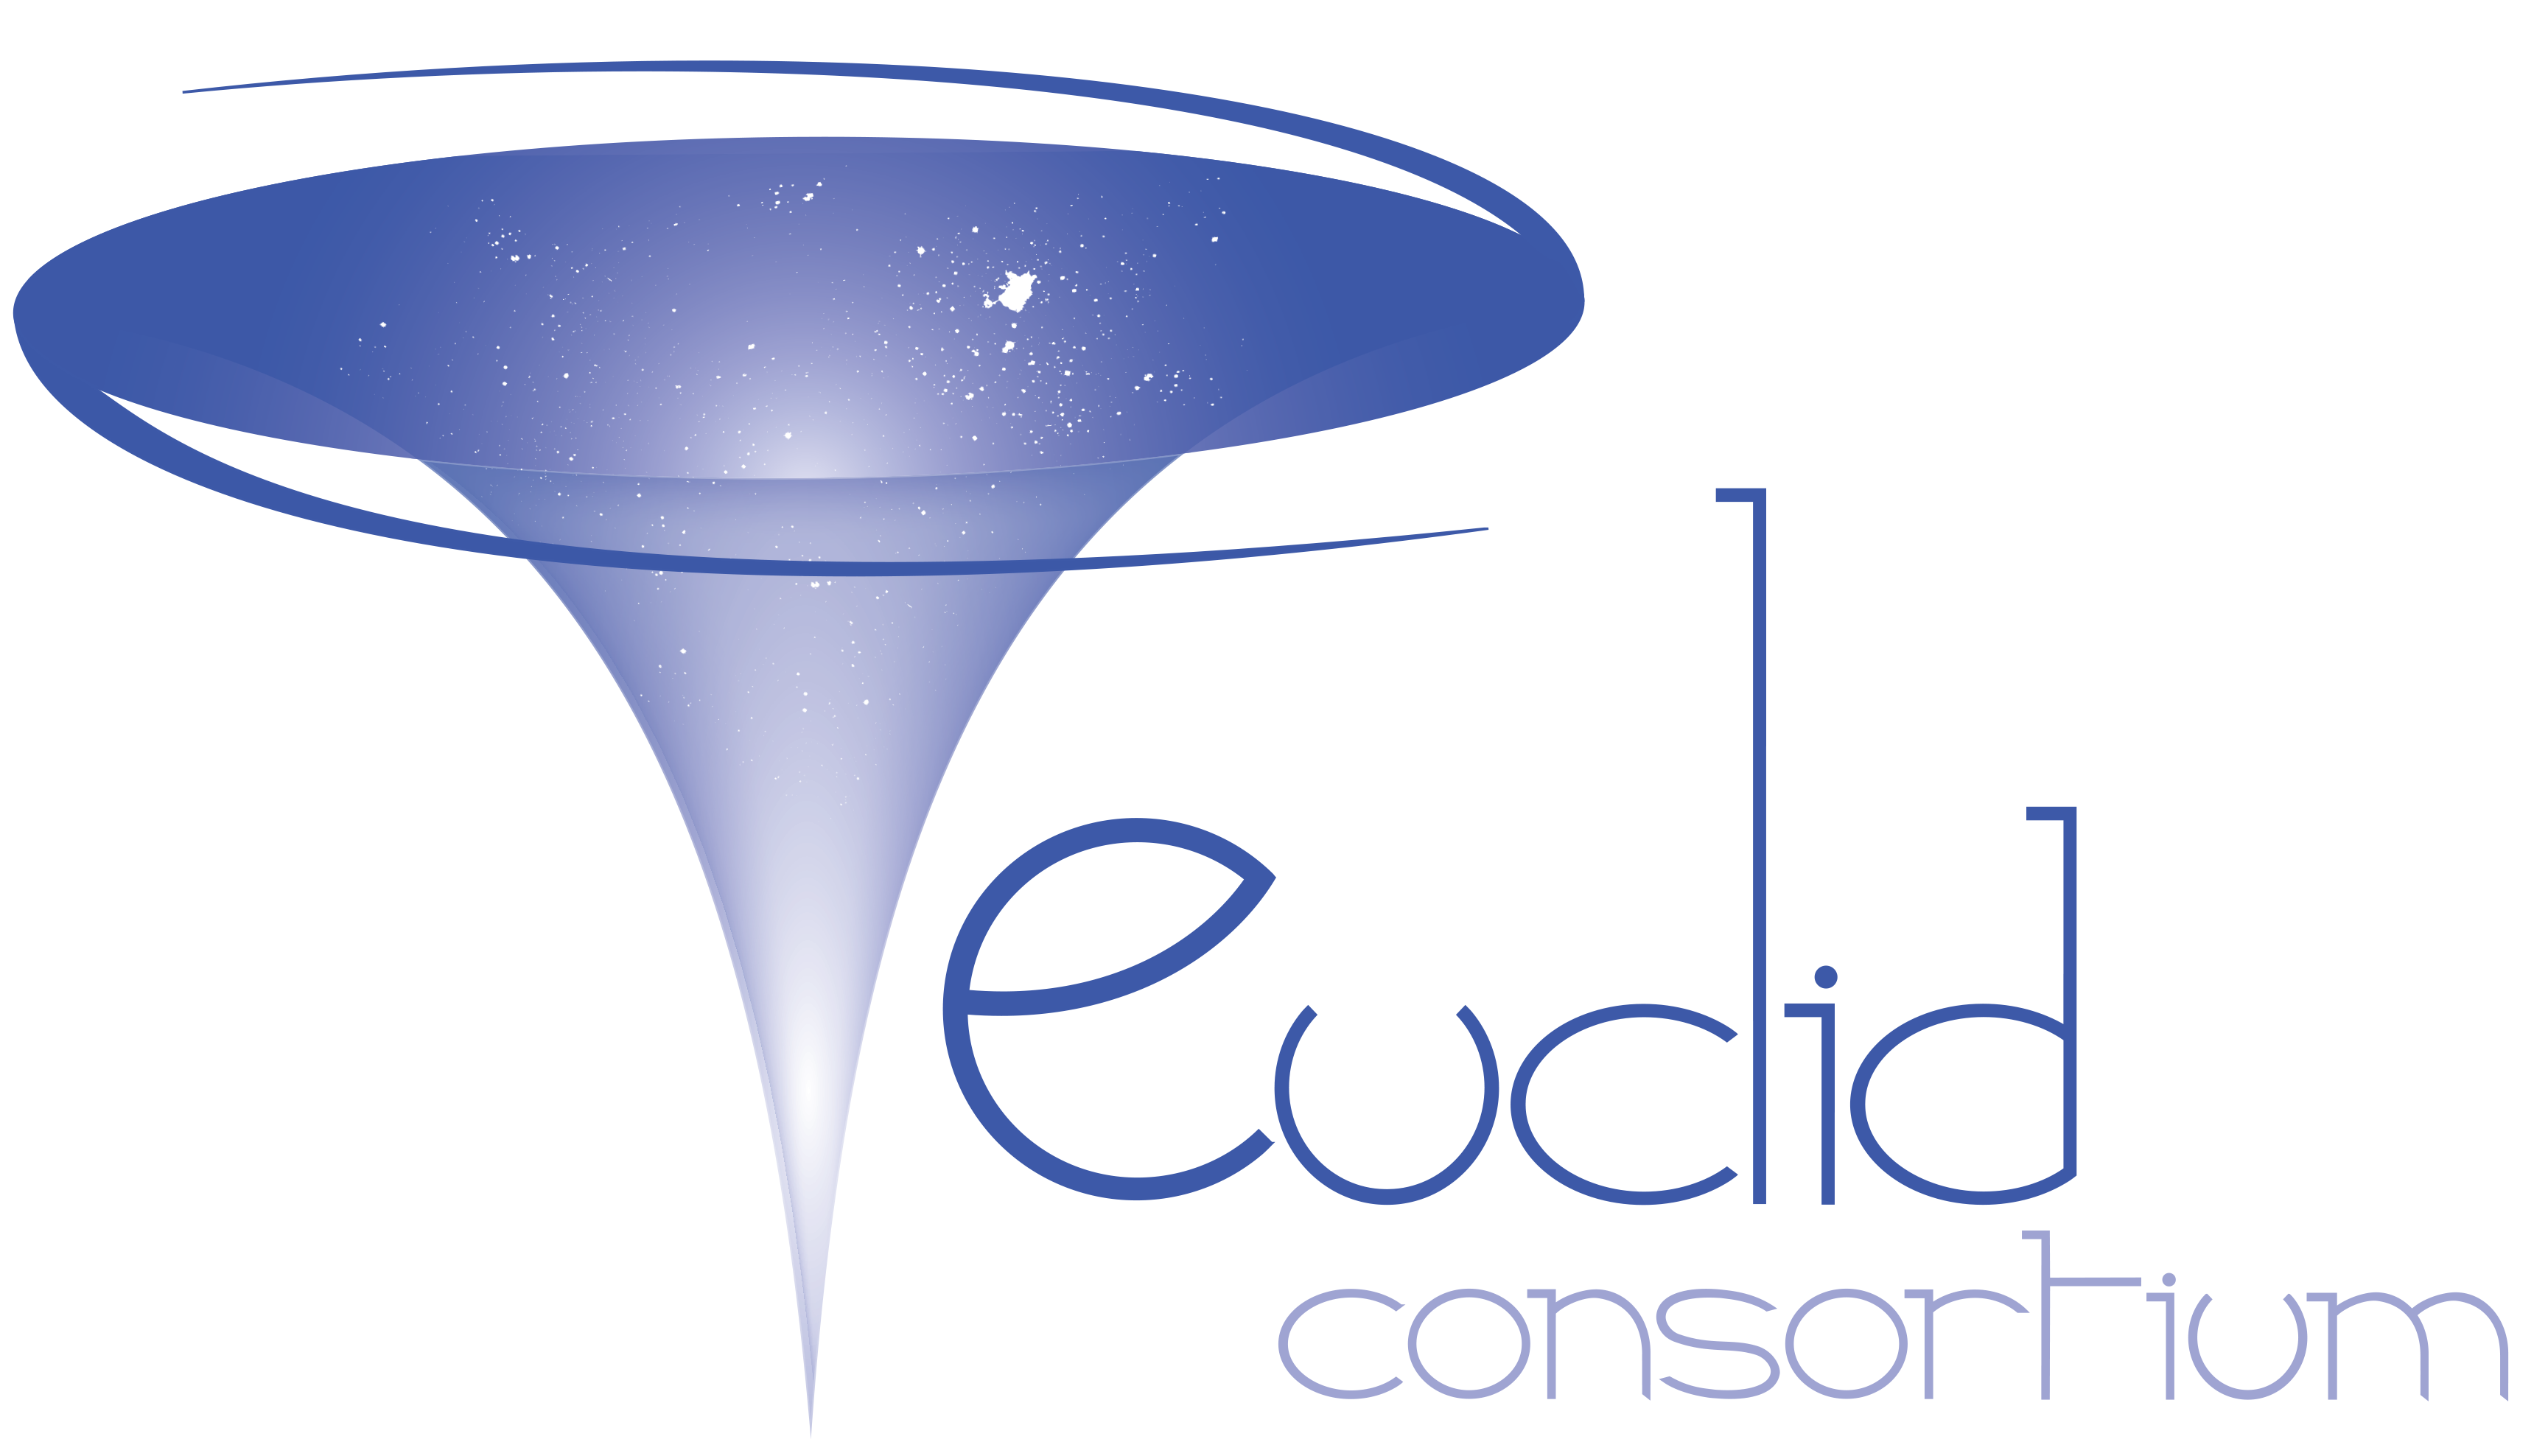 Euclid consortium logo